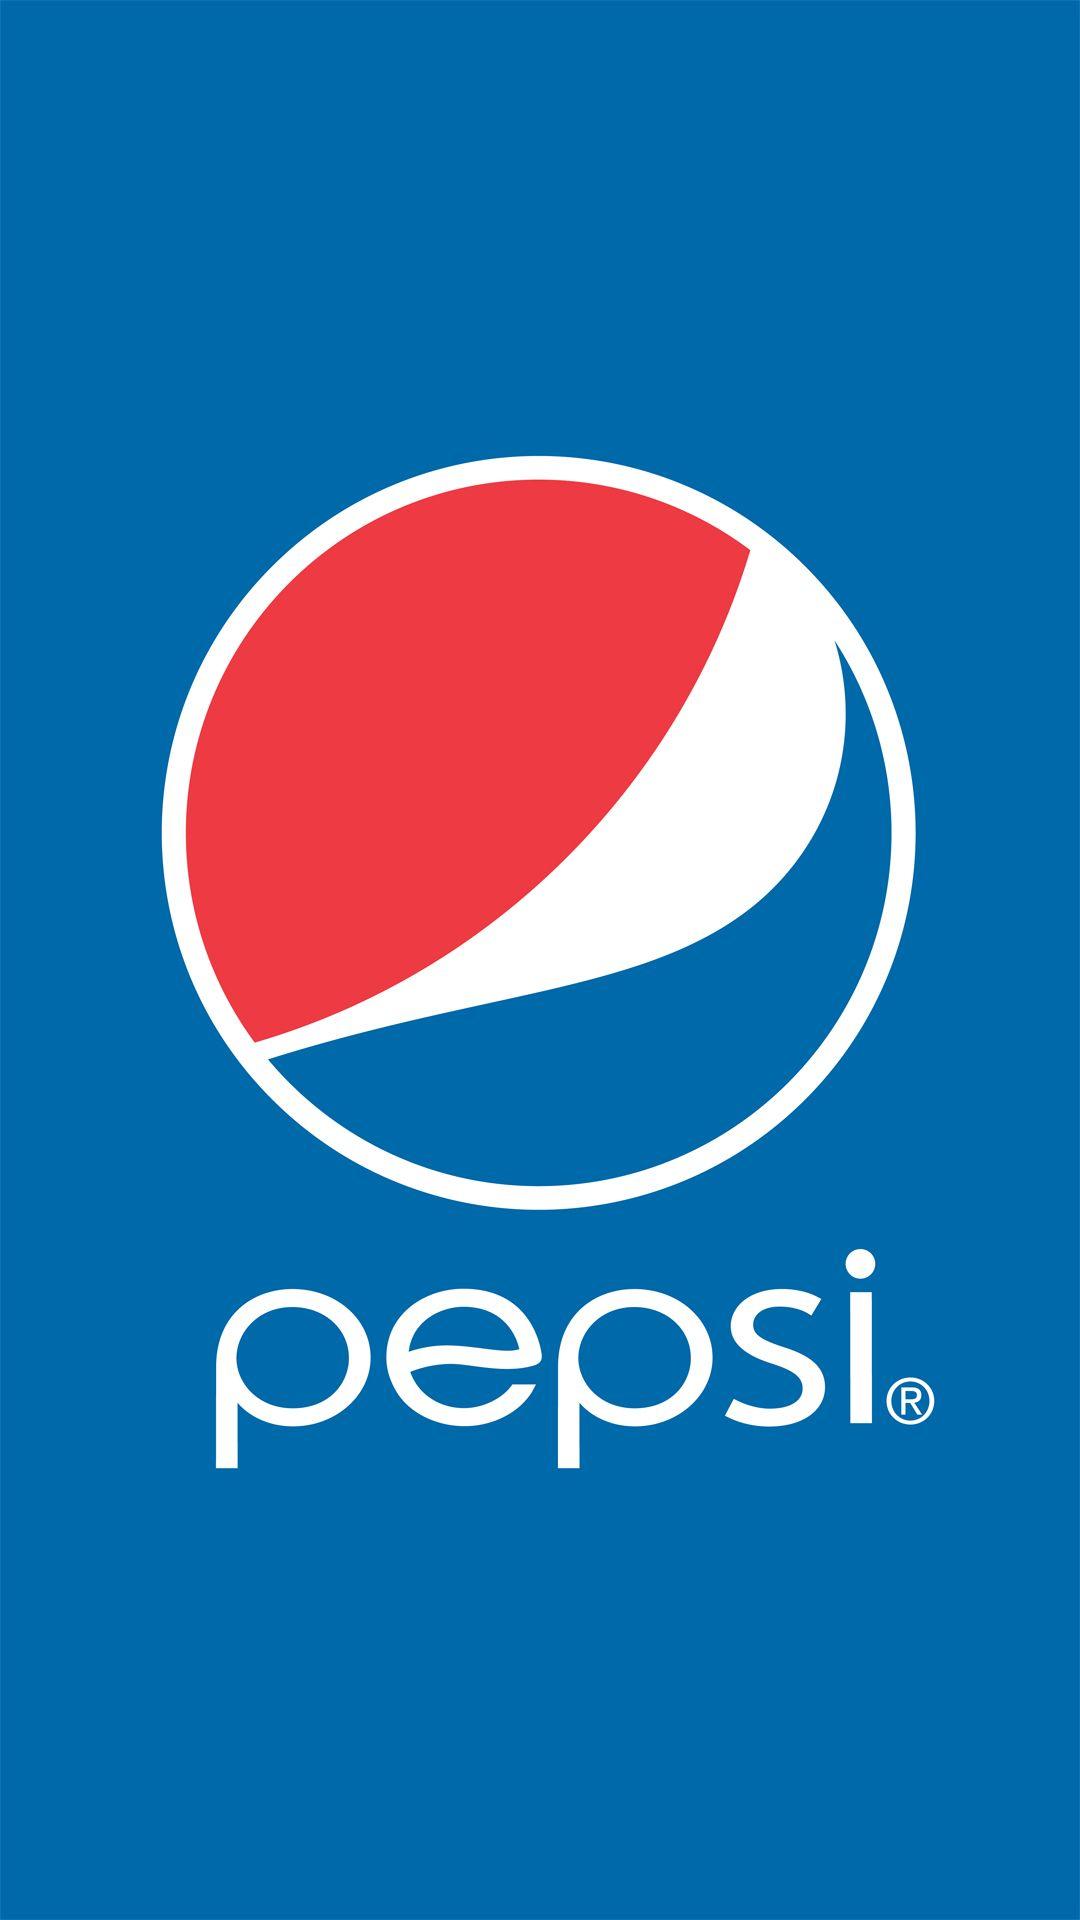 Pepsi Wallpapers